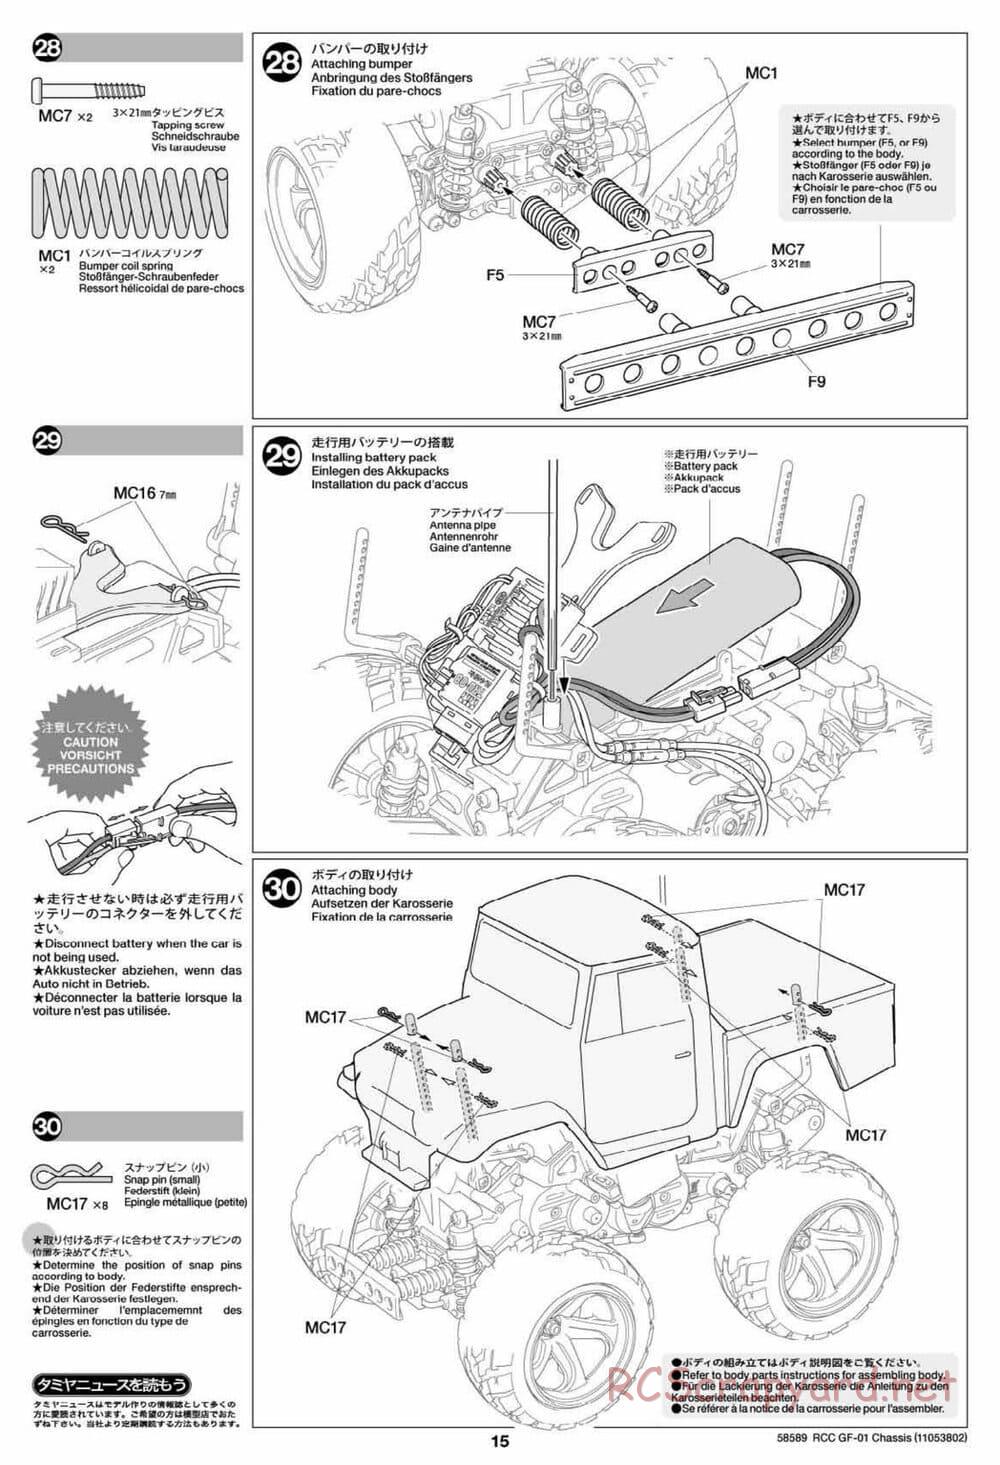 Tamiya - GF-01 Chassis - Manual - Page 15